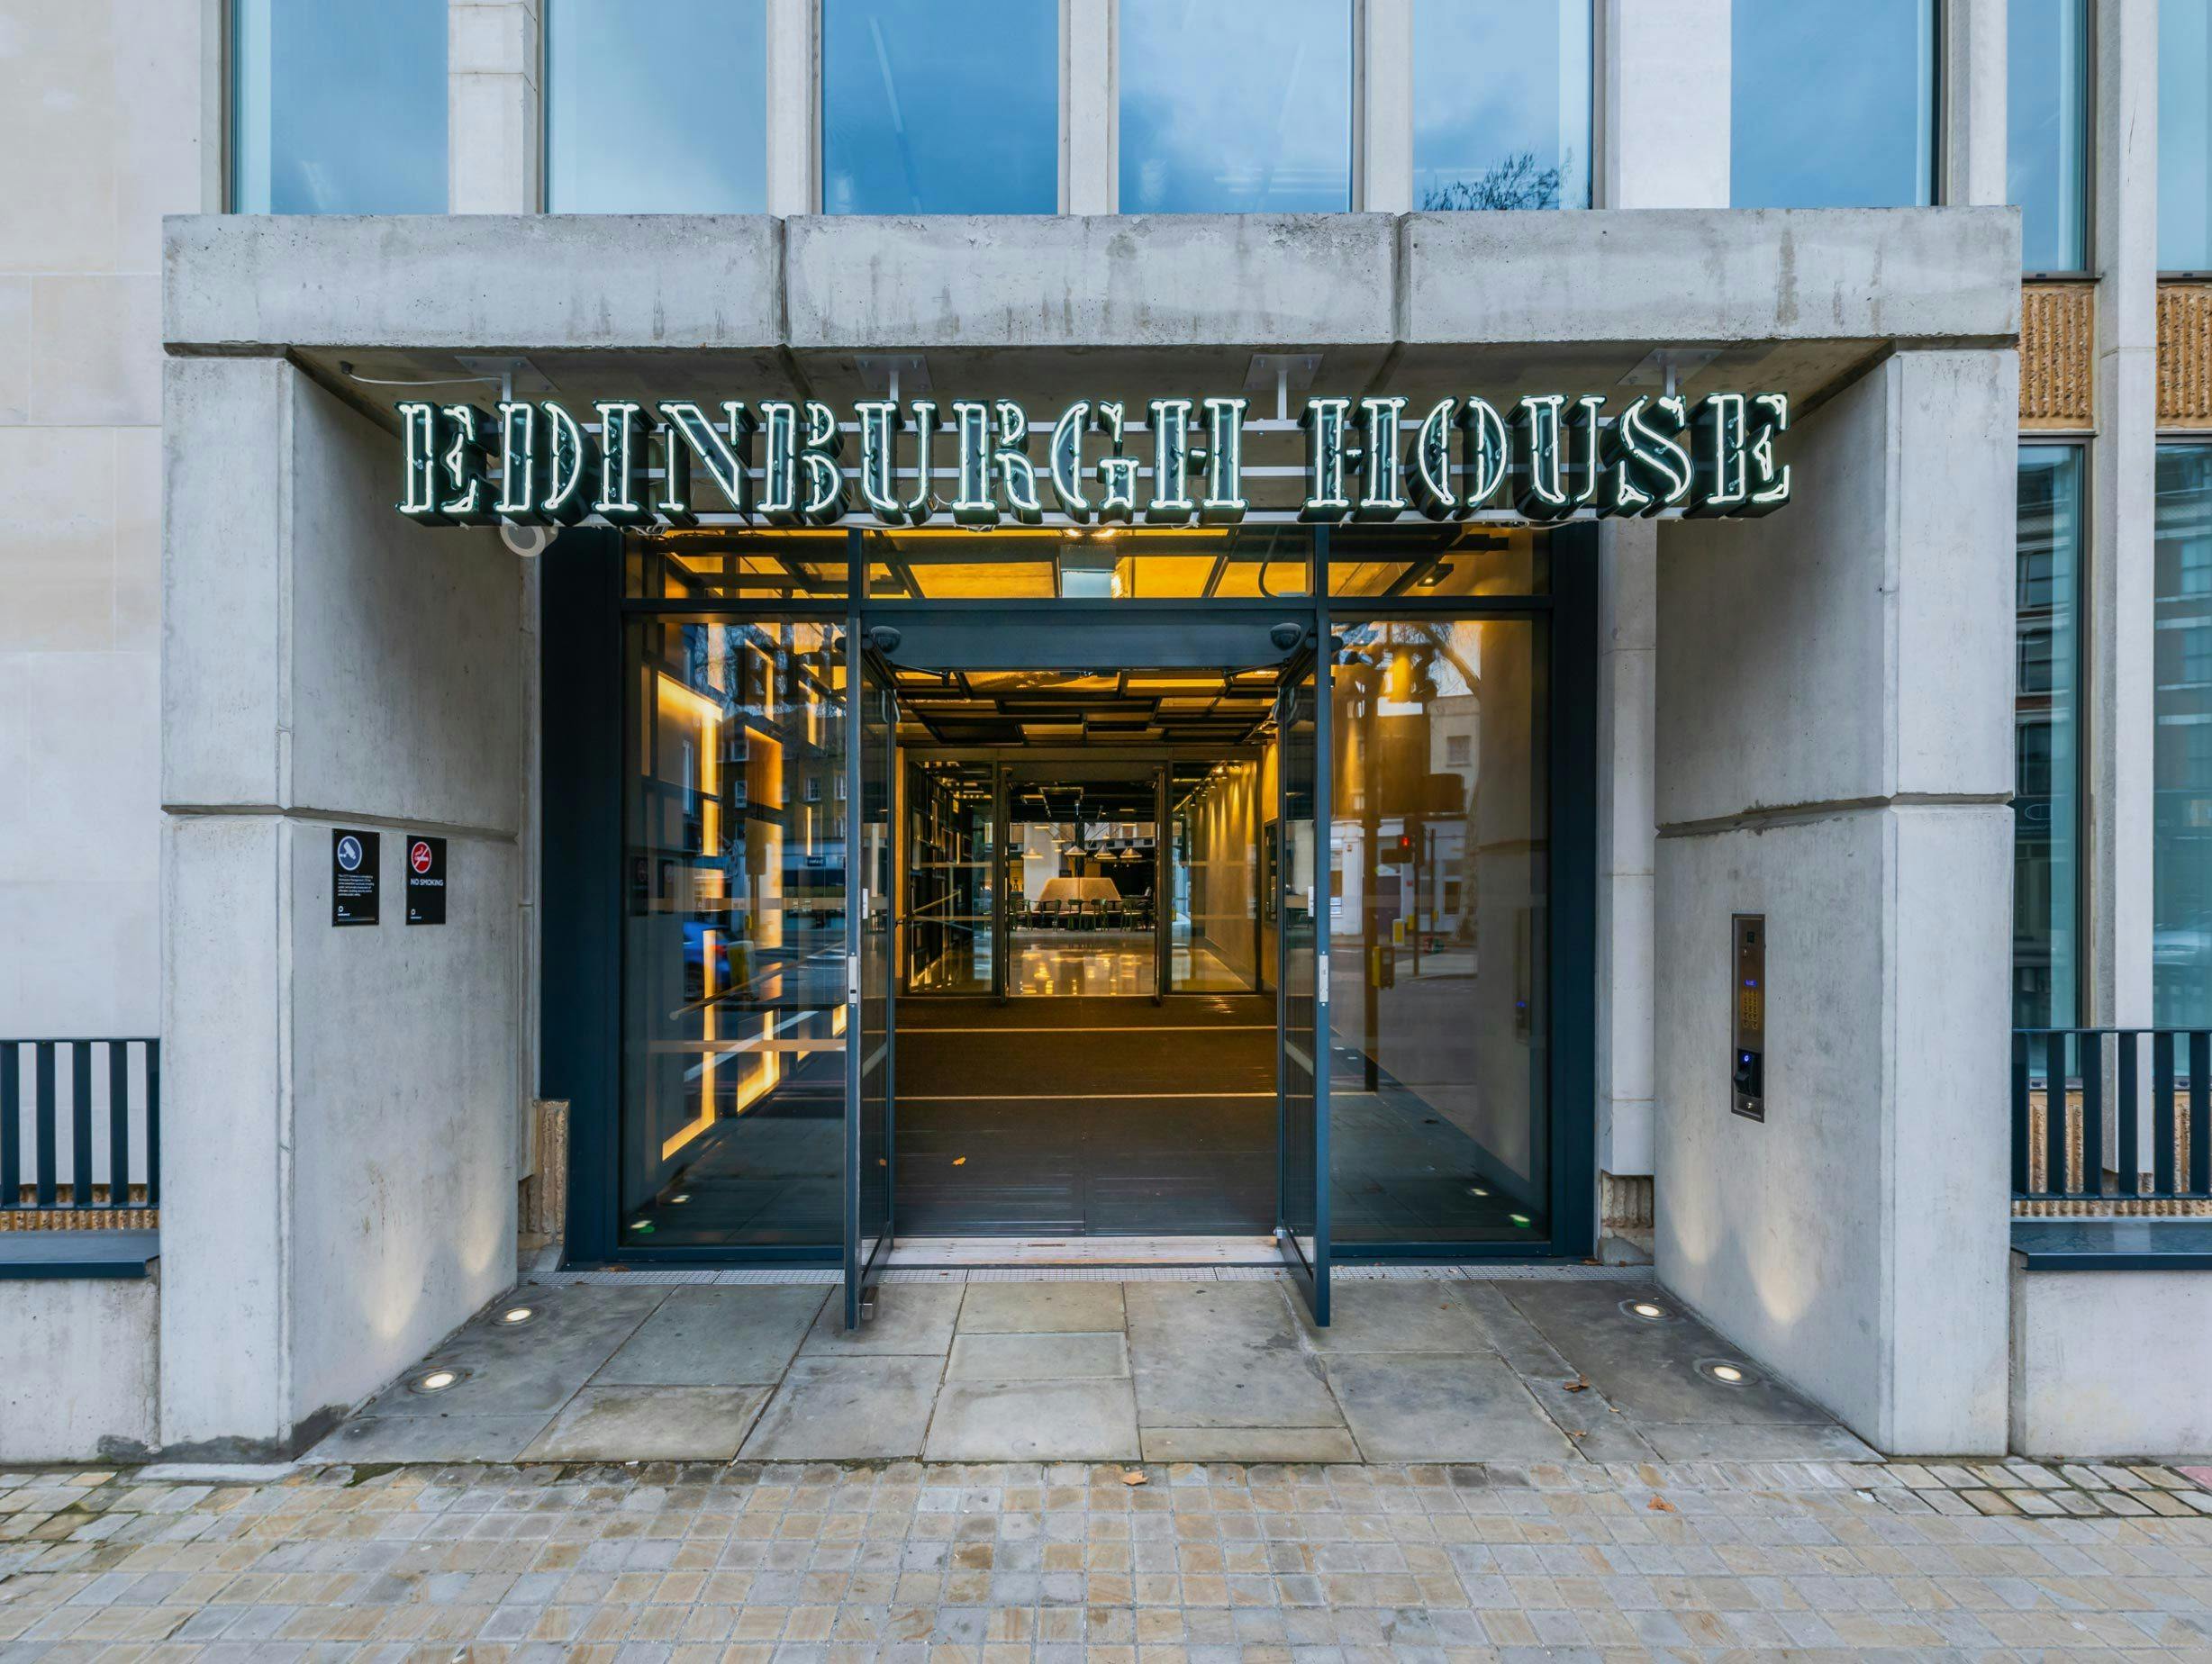 Bluebottle Edinburgh House image